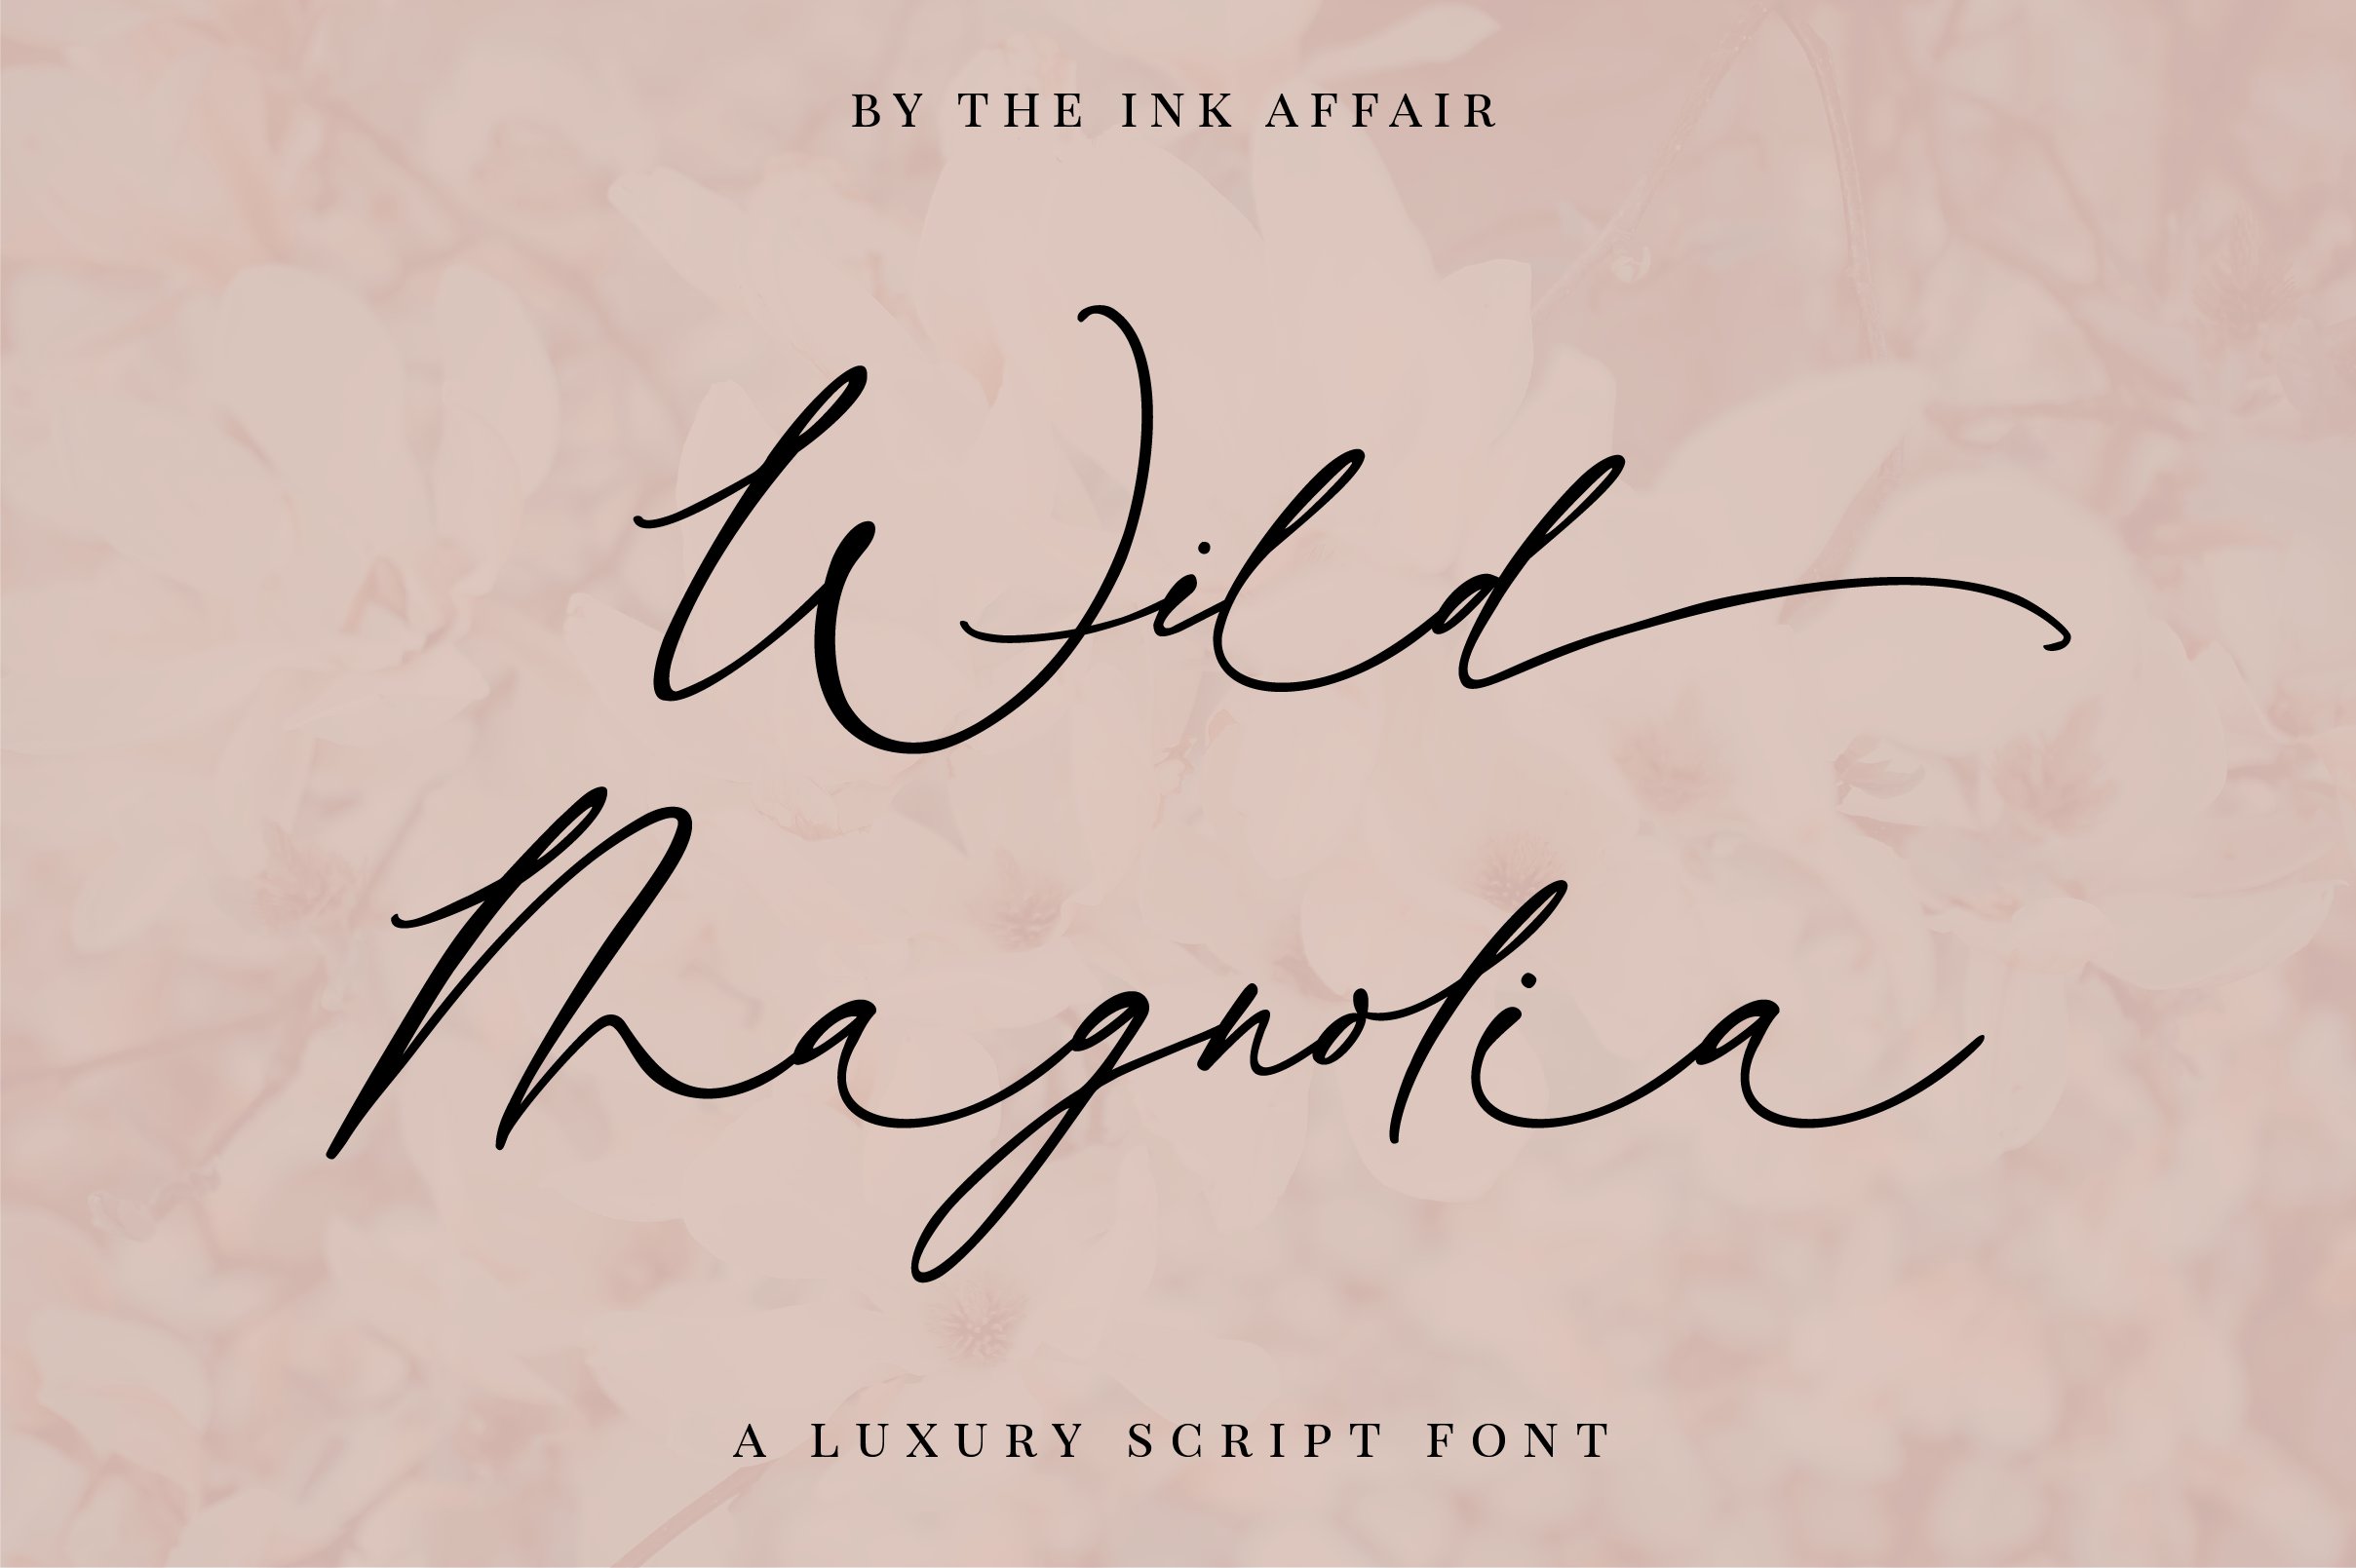 Wild Magnolia Luxury Script cover image.